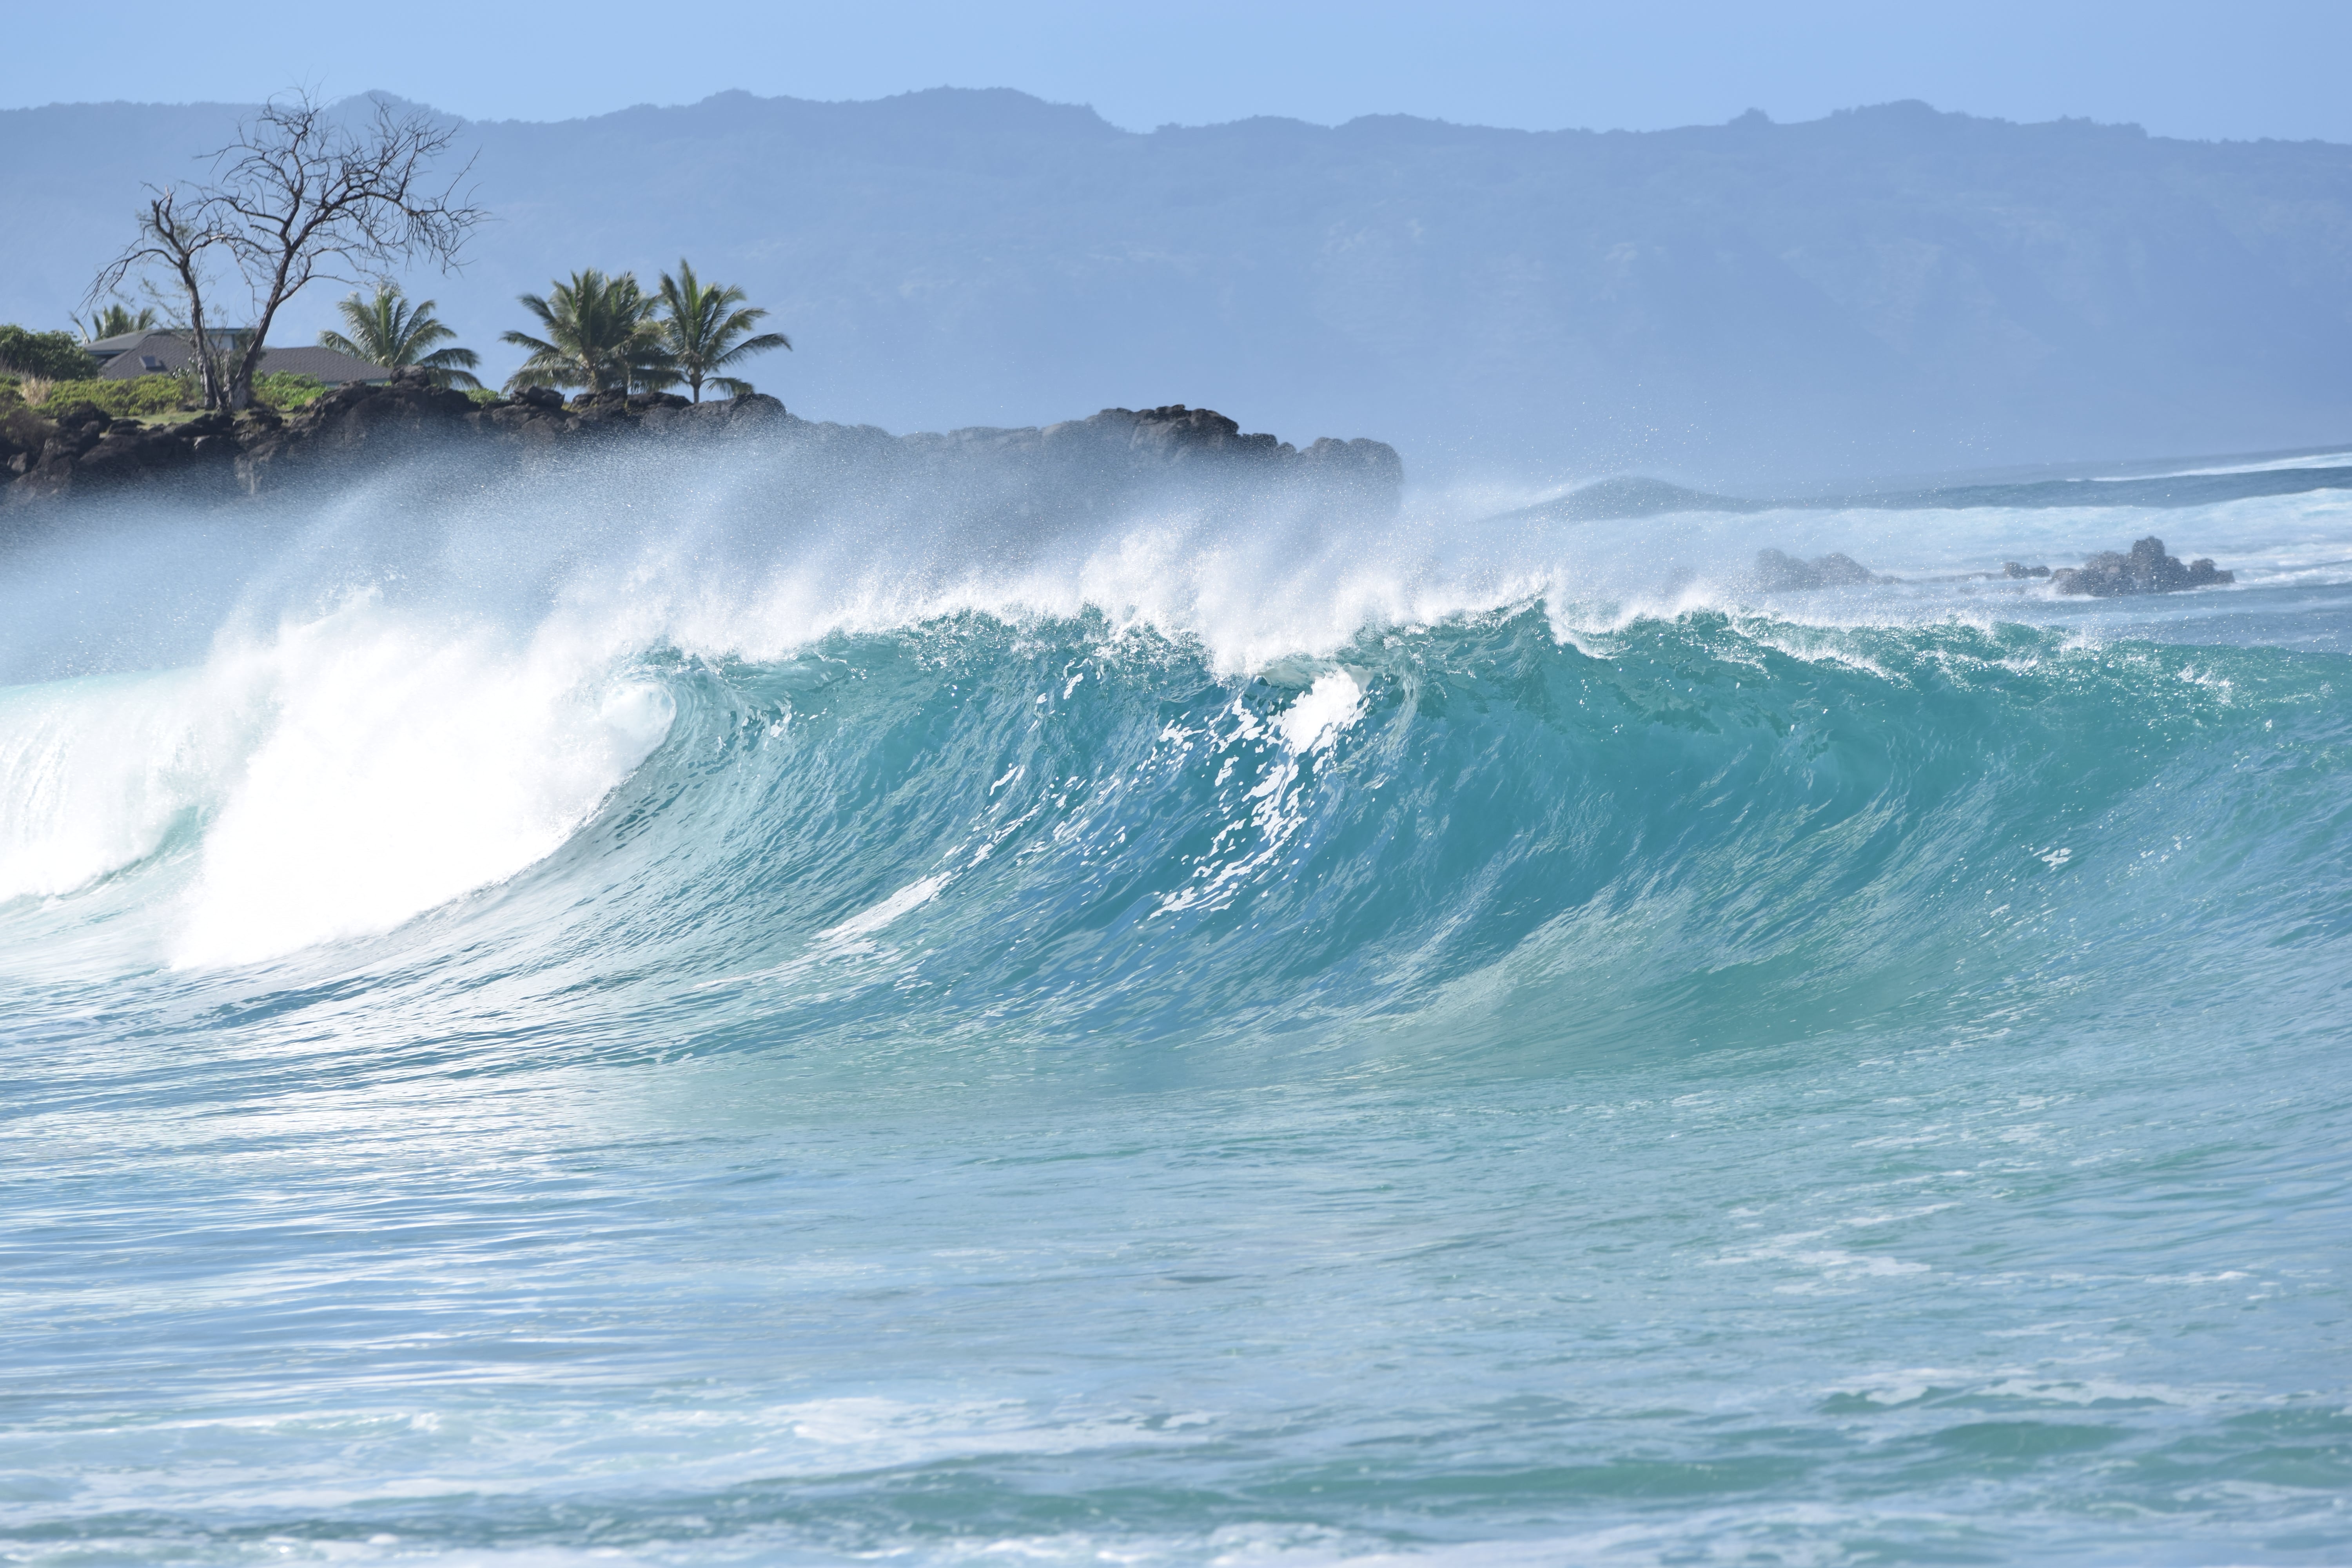 North Shore Hawaii Waves At Waimea Bay - North Shore Waves - Haleiwa Hawaii - Waimea Bay Waves - Waves At North Shore - Winter Waves Hawaii - Oahu Surf Waves - North Shore Oahu Waves - North Shore Hawaii Waves - North Shore Surf Report - North Shore Surf - Oahu North Shore Wave Height - North Shore Hawaii Surfing - Surfing North Shore Oahu #hawaii #oahu #surf 